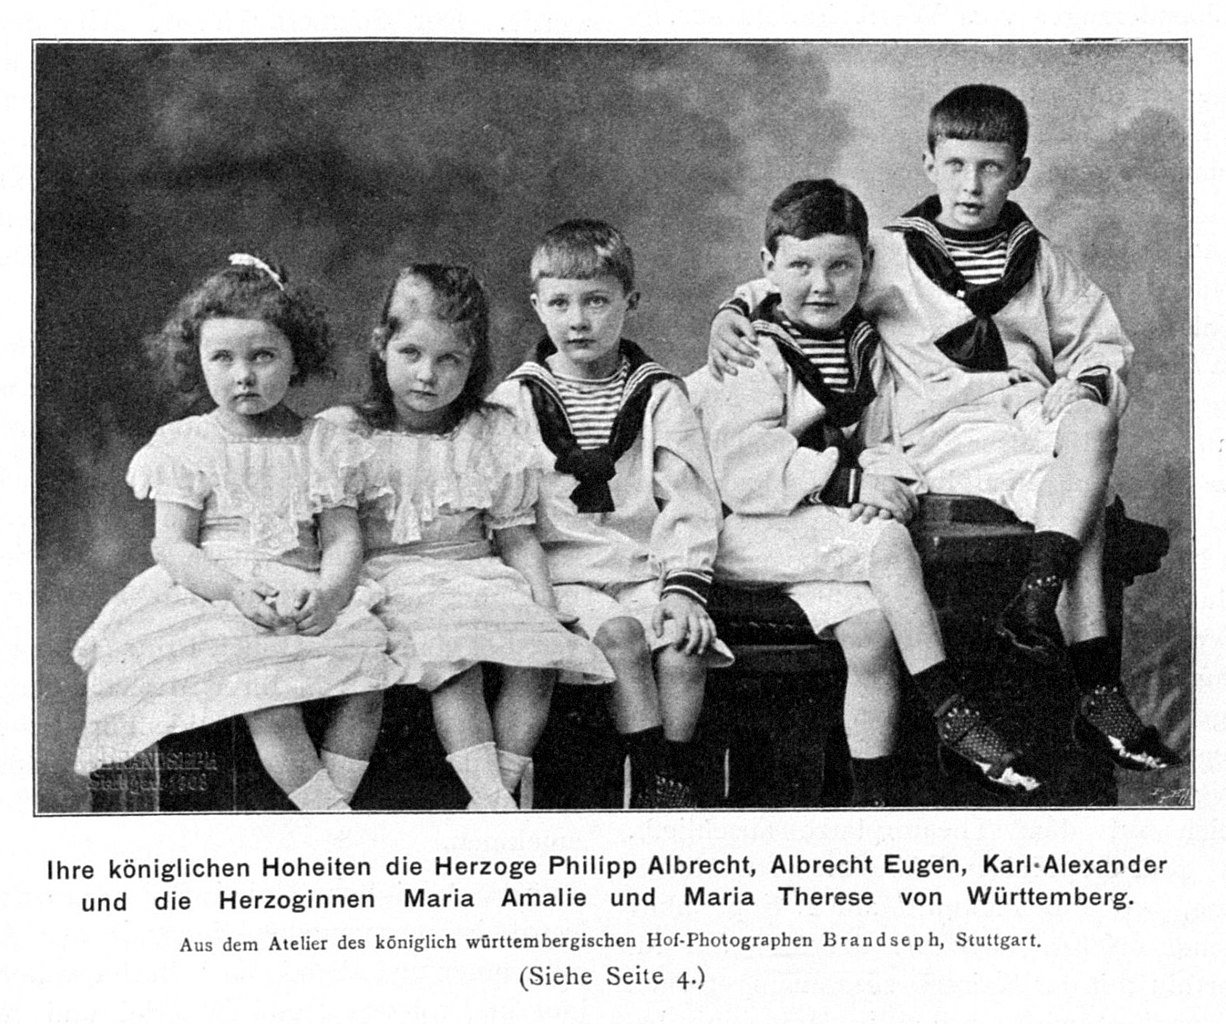 Grupo de crianças alemãs da dinastia de Württenberg, os meninos com roupa da marinheiro.